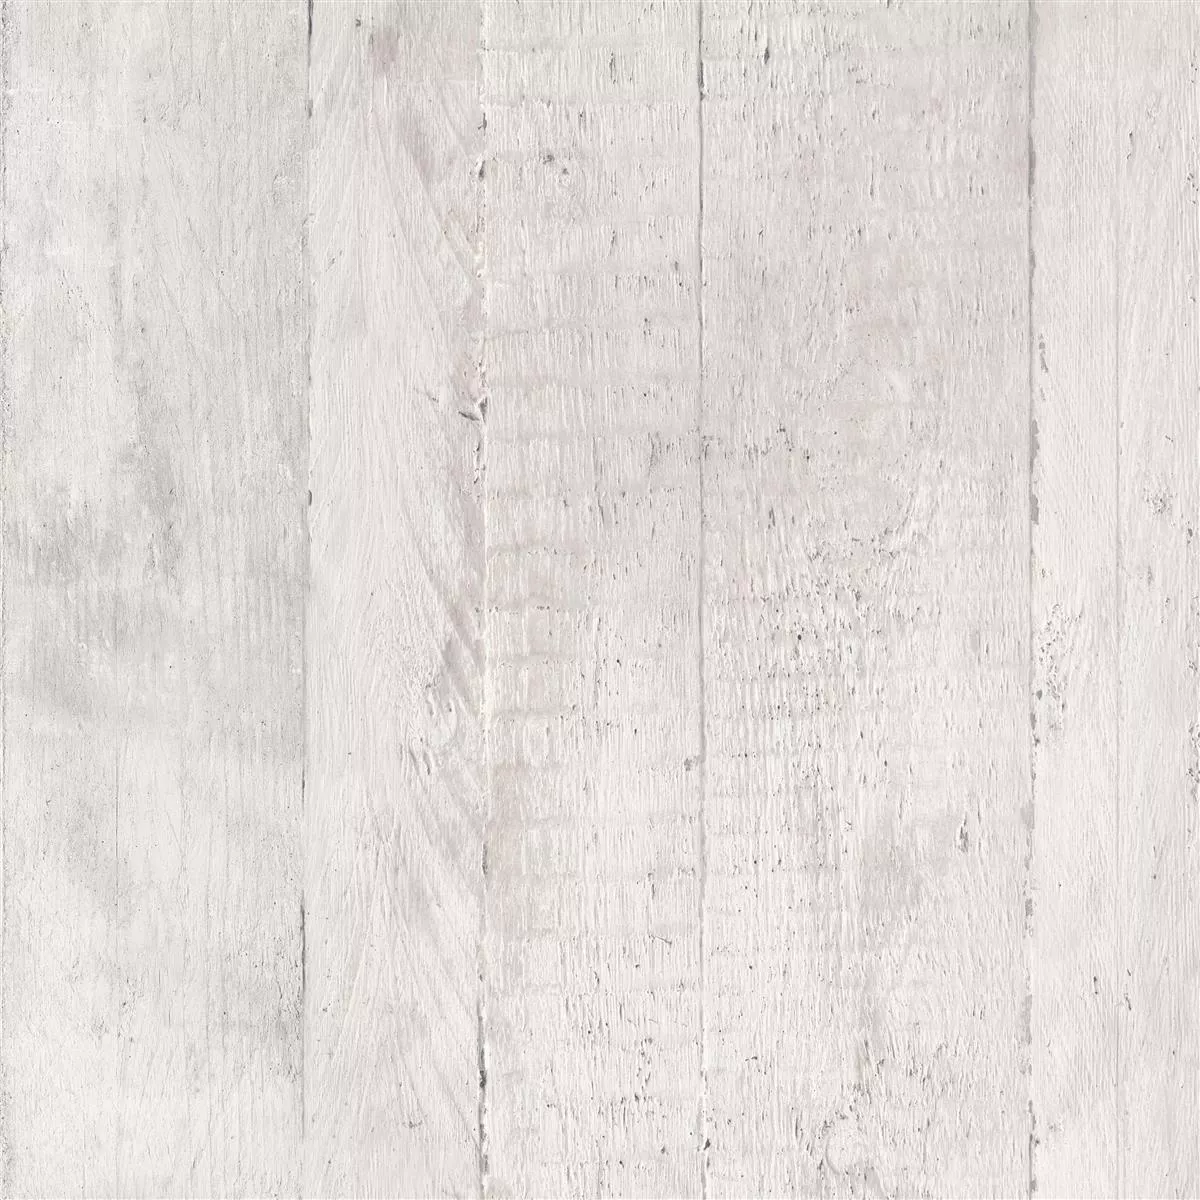 Πλακάκια Δαπέδου Gorki Όψη Ξύλου 60x60cm Γυαλισμένο Ασπρο